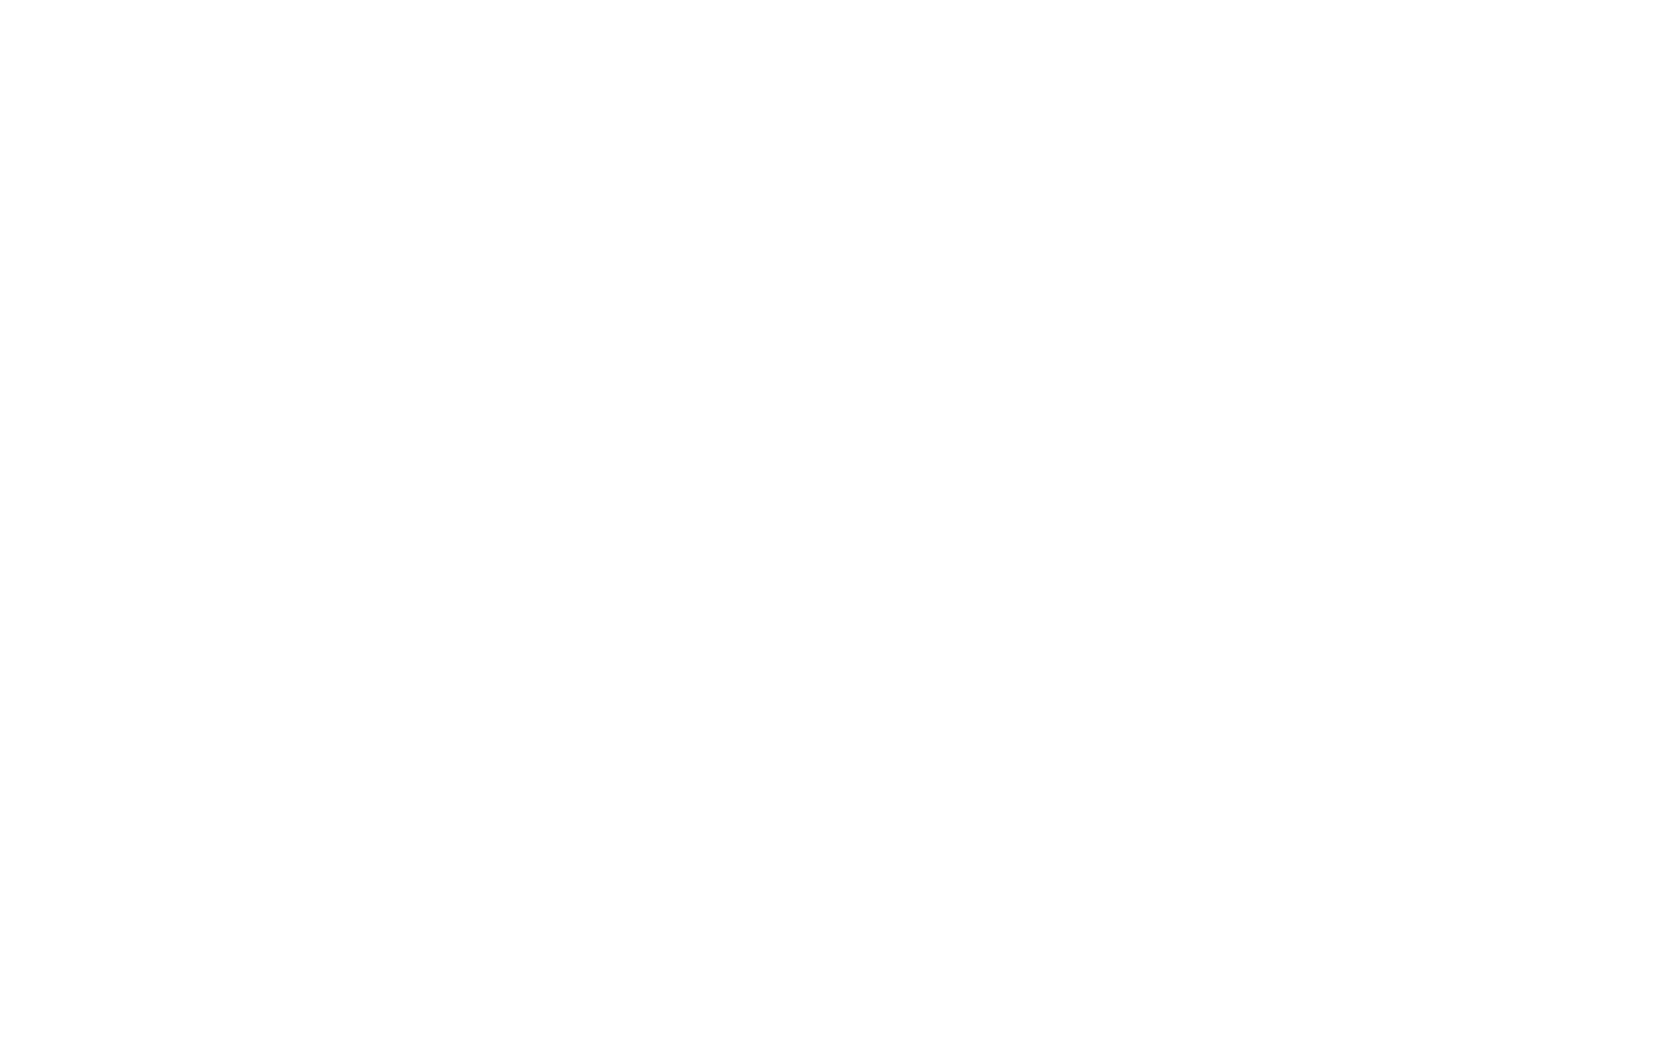 Торцевая заглушка Flexy TOREC LINE 50 W для профилей Flexy: размер, вид, применение, способ монтажа в Беларуси (РБ)